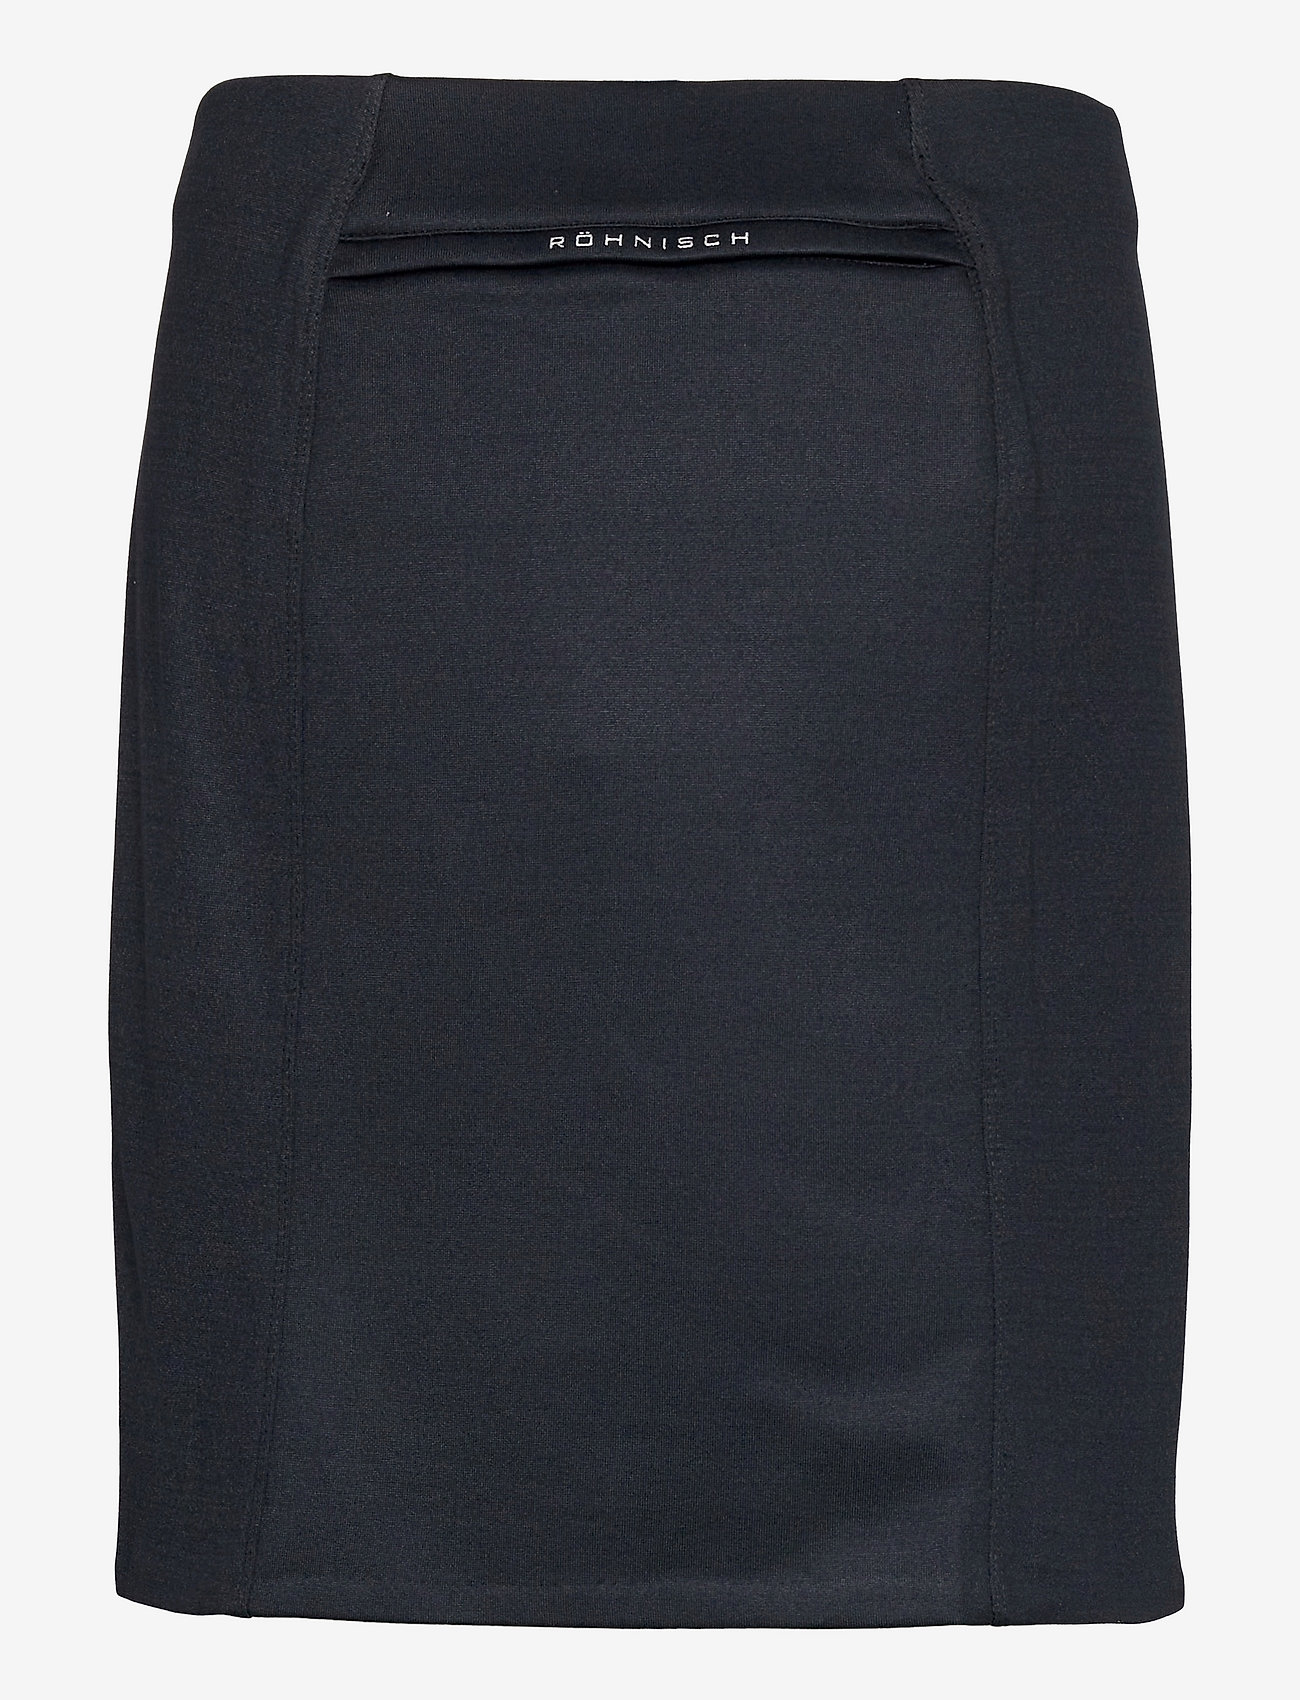 Röhnisch - Ivy skirt - skirts - black - 1